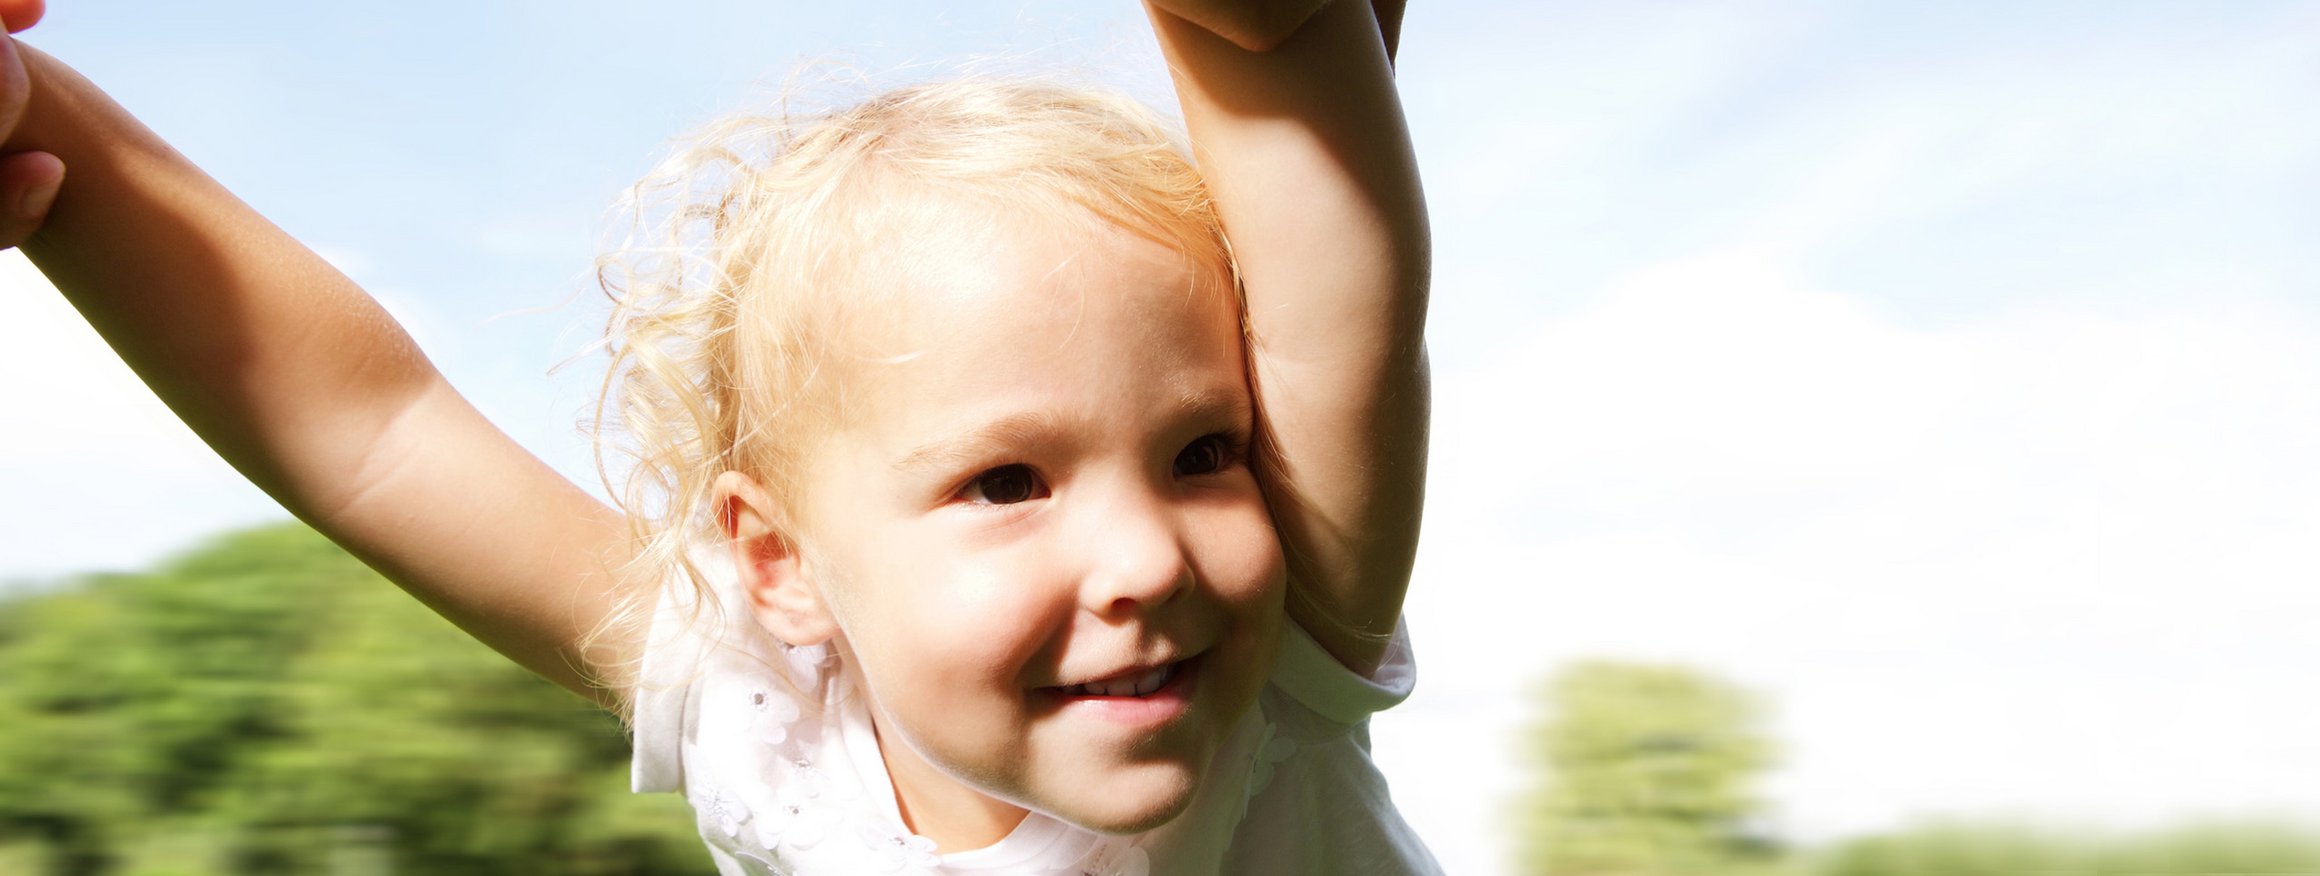 Ein kleines, blondes Mädchen wird sicher von seinen Eltern an den Händen in der Luft im Kreis gedreht